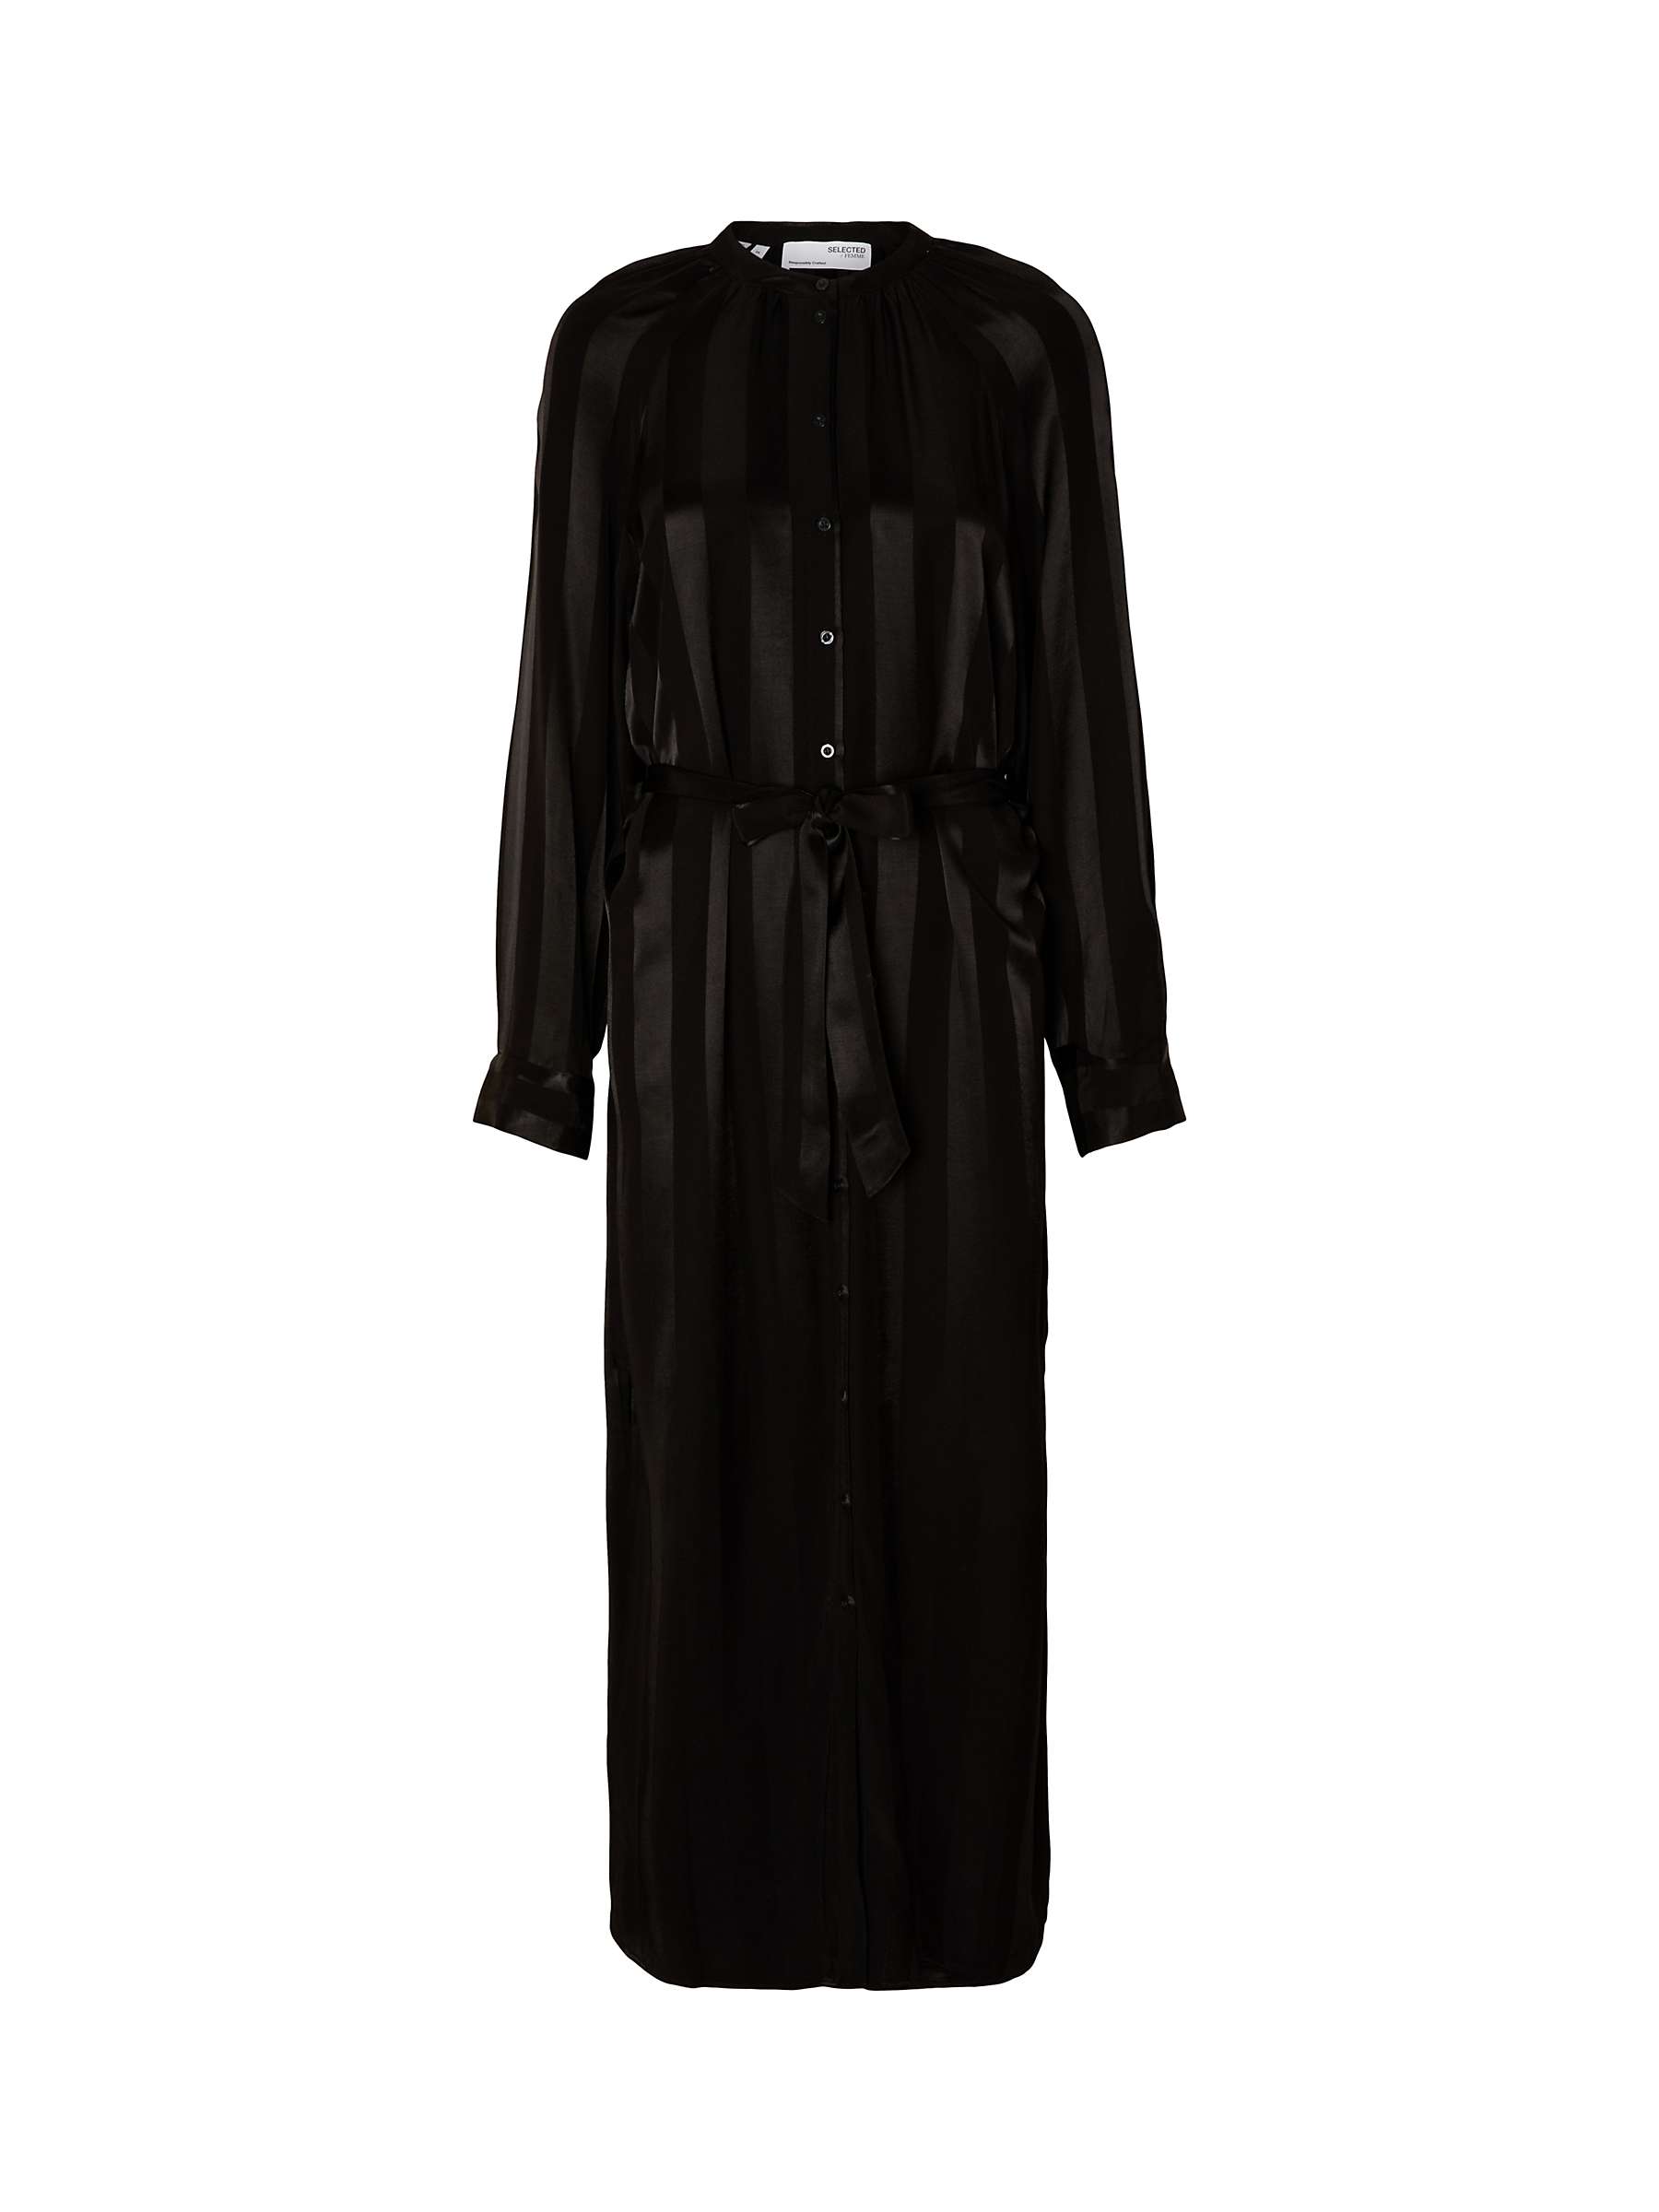 Buy SELECTED FEMME Christel Maxi Shirt Dress, Black Online at johnlewis.com